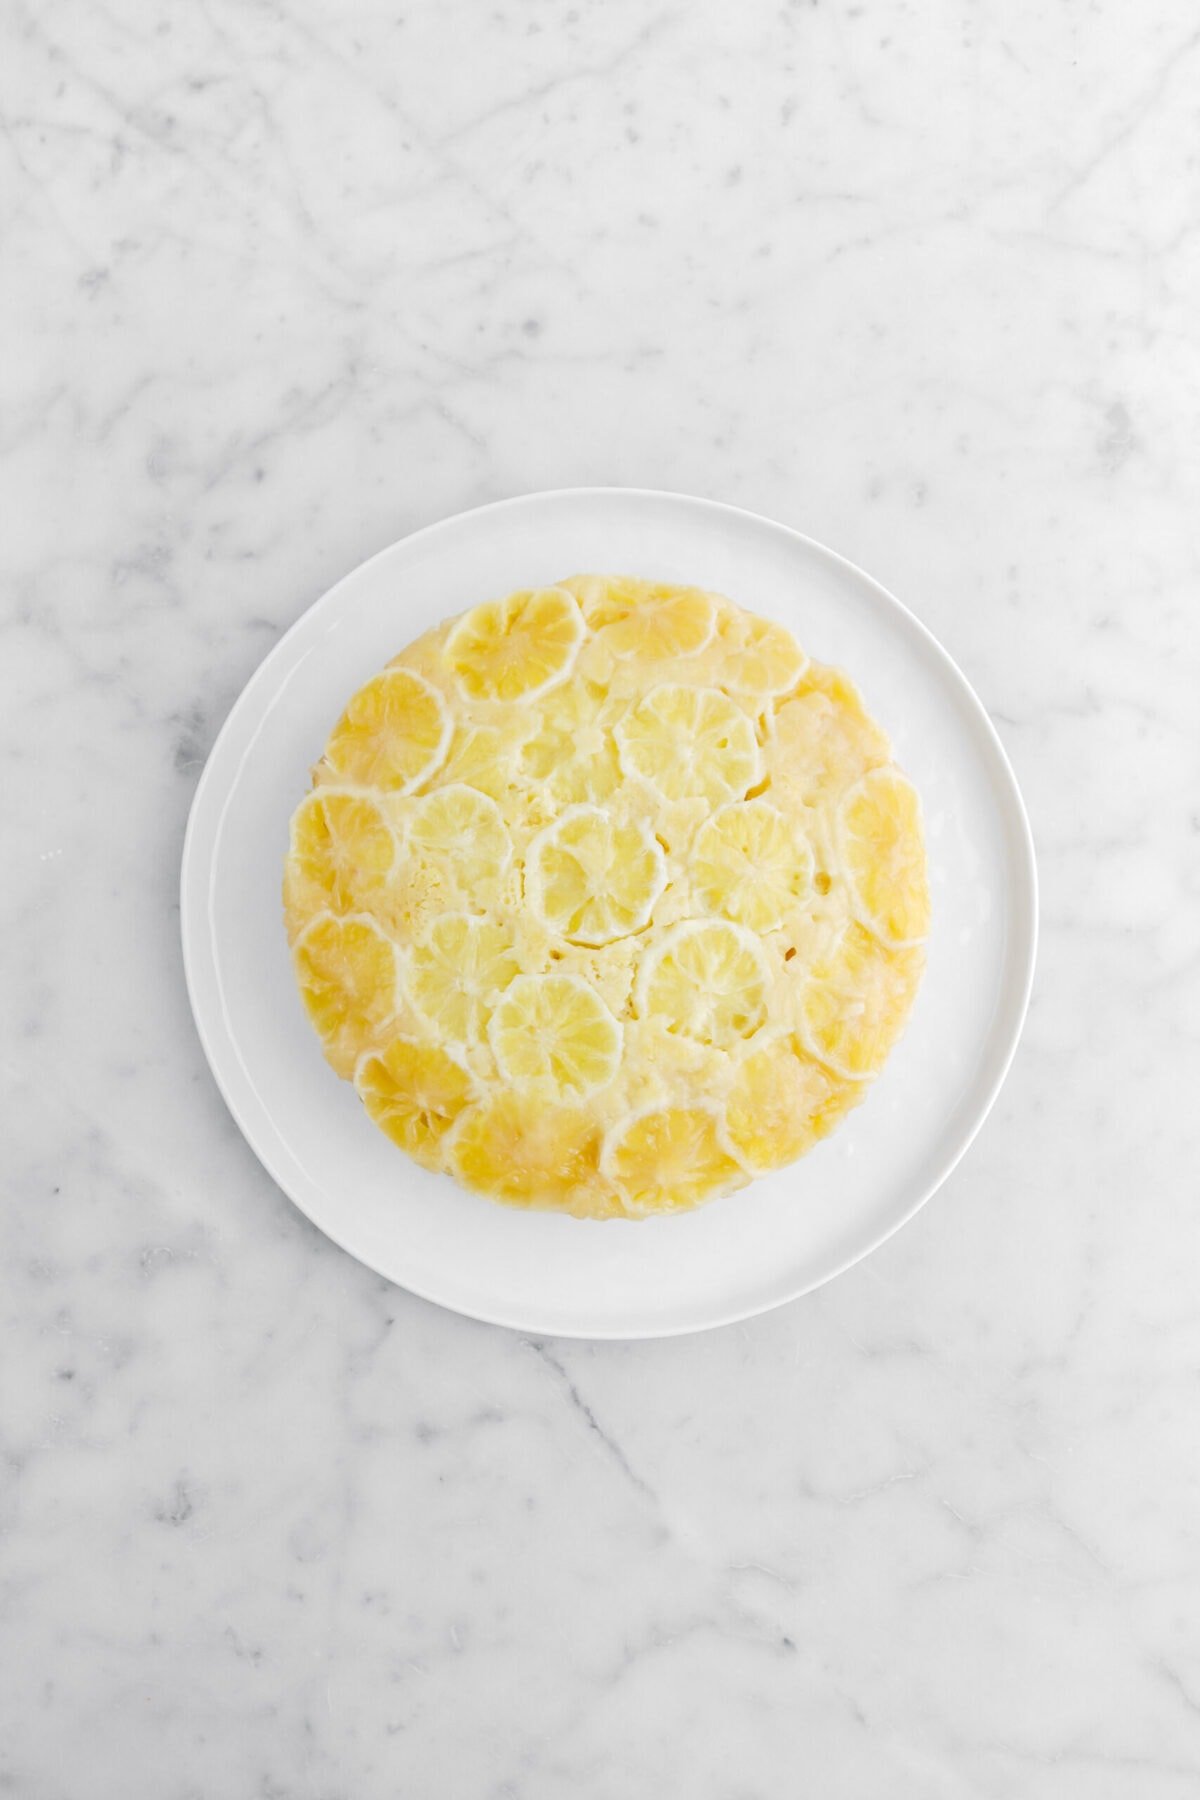 lemon upside down cake on white plate.